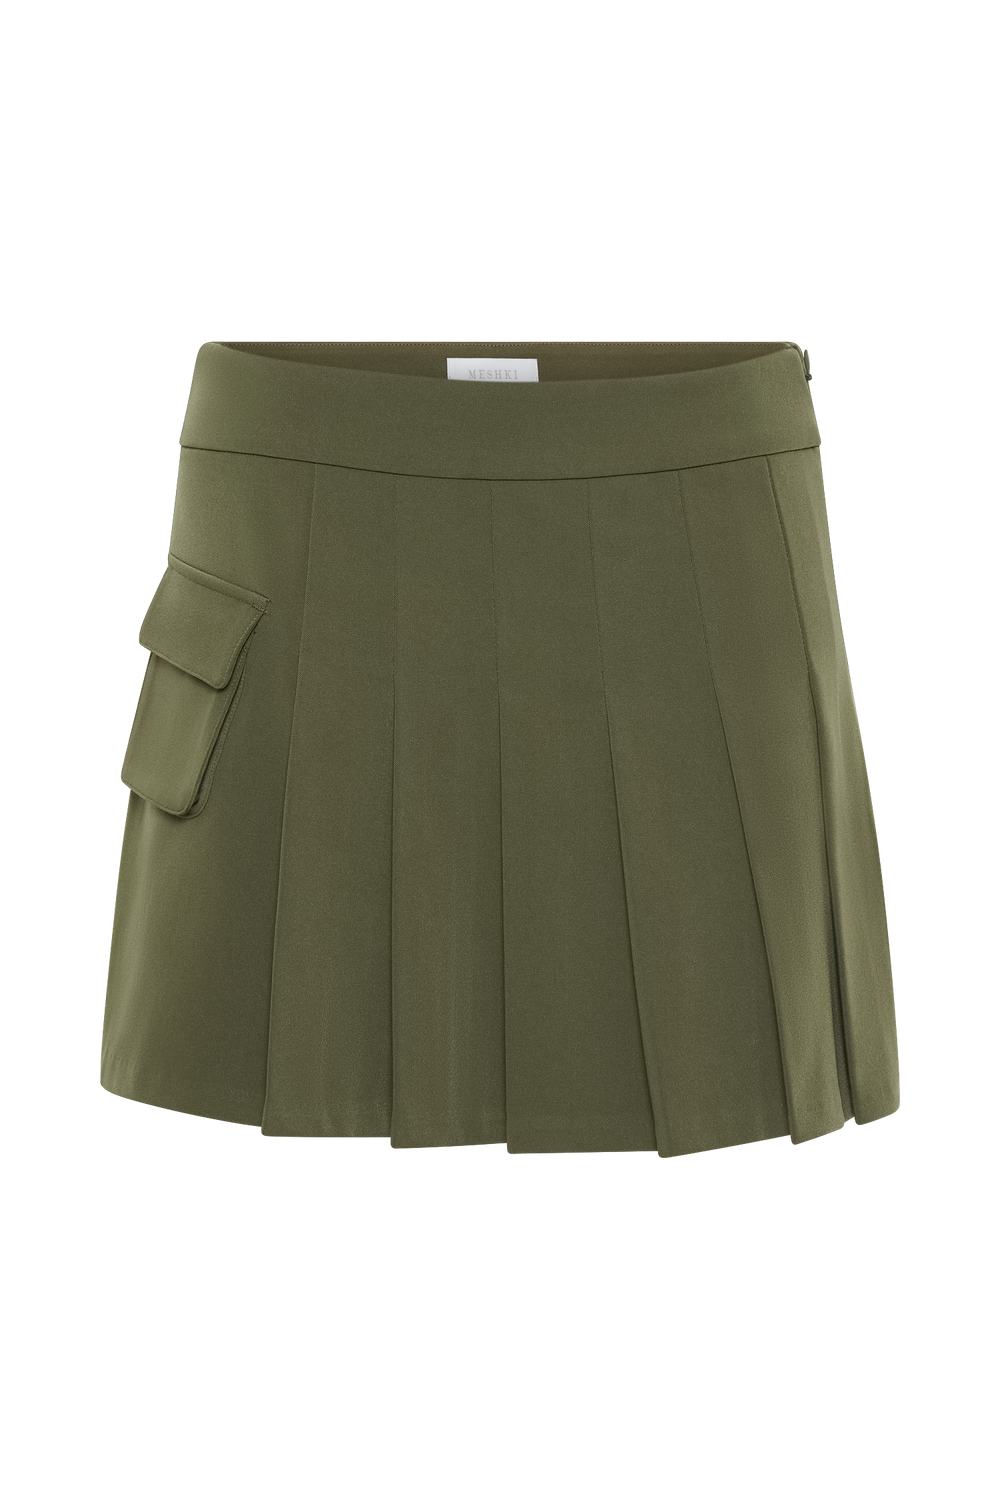 Brigitte Pleated Mini Skirt With Pocket - Military Olive